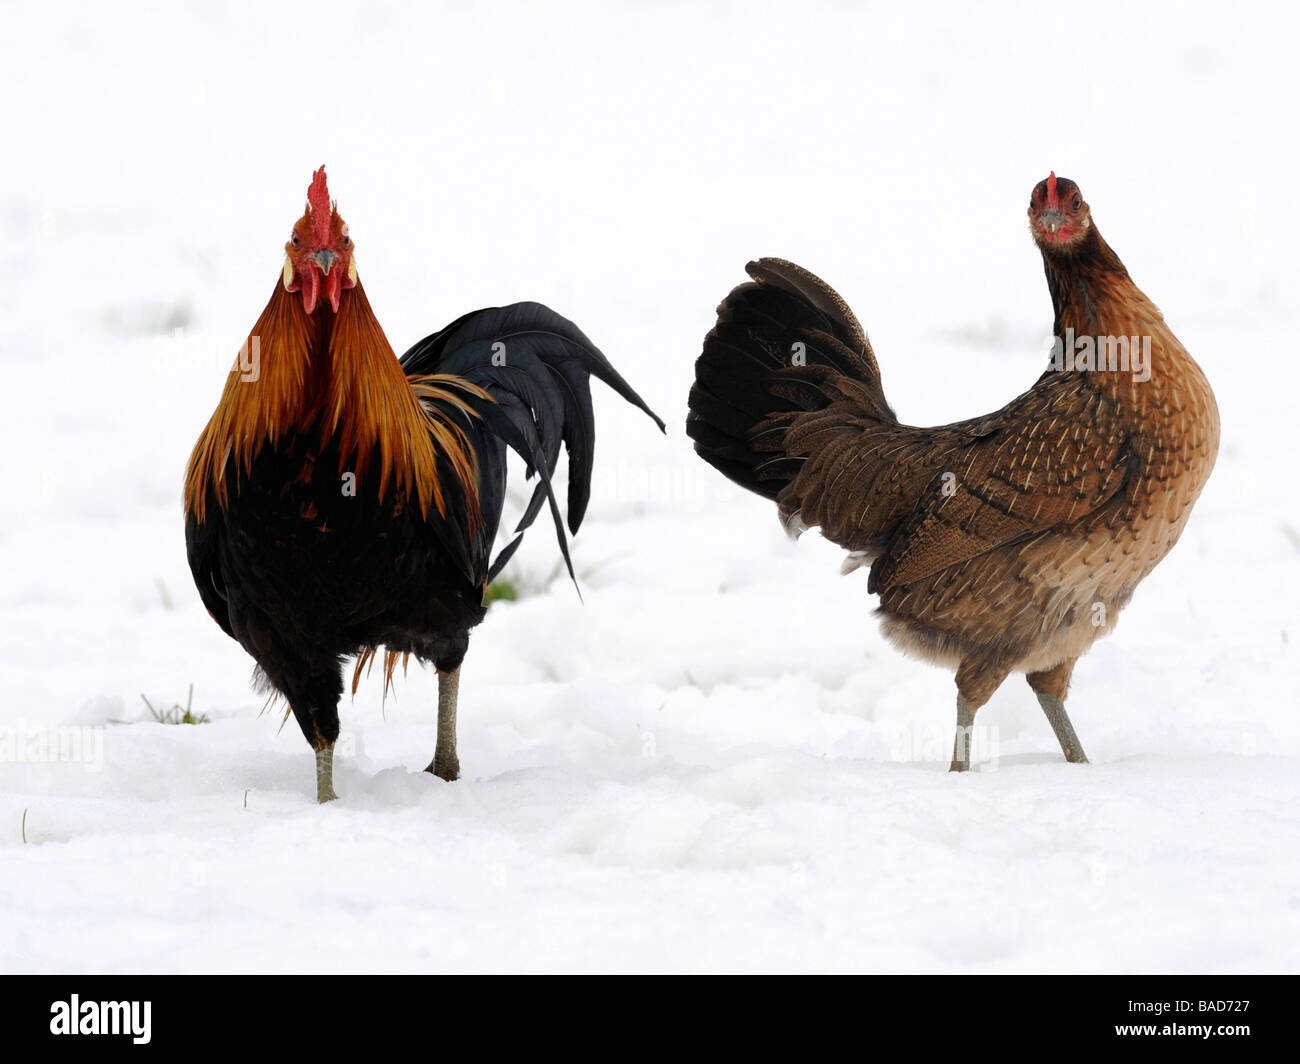 Un gallo y una gallina fotografiados en la nieve. Foto de stock